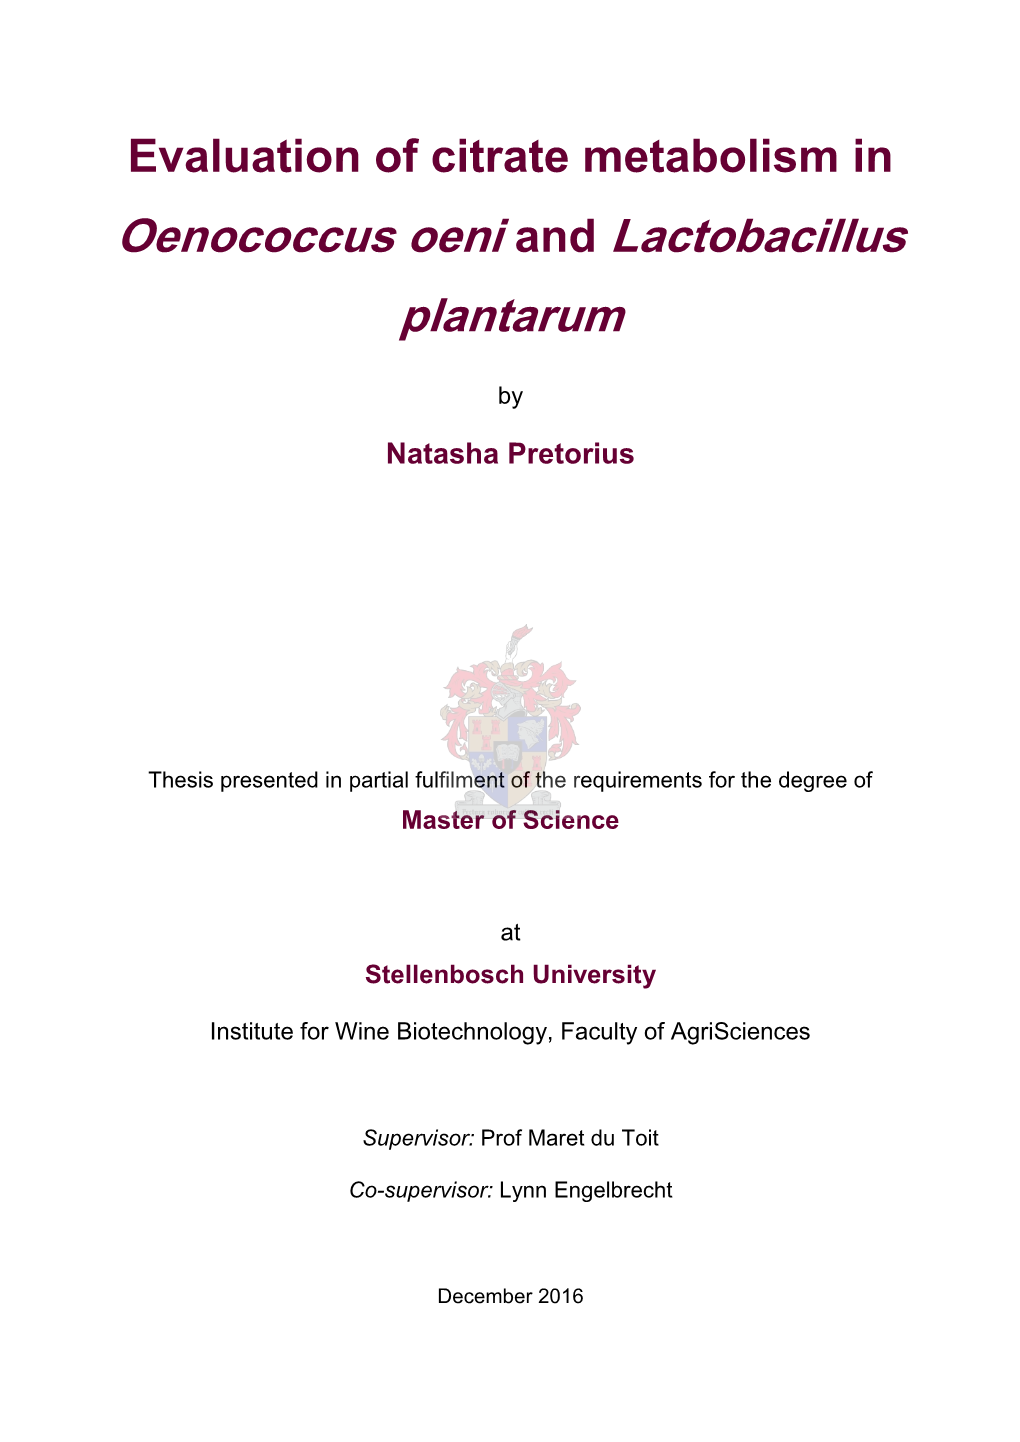 Evaluation of Citrate Metabolism in Oenococcus Oeni and Lactobacillus Plantarum